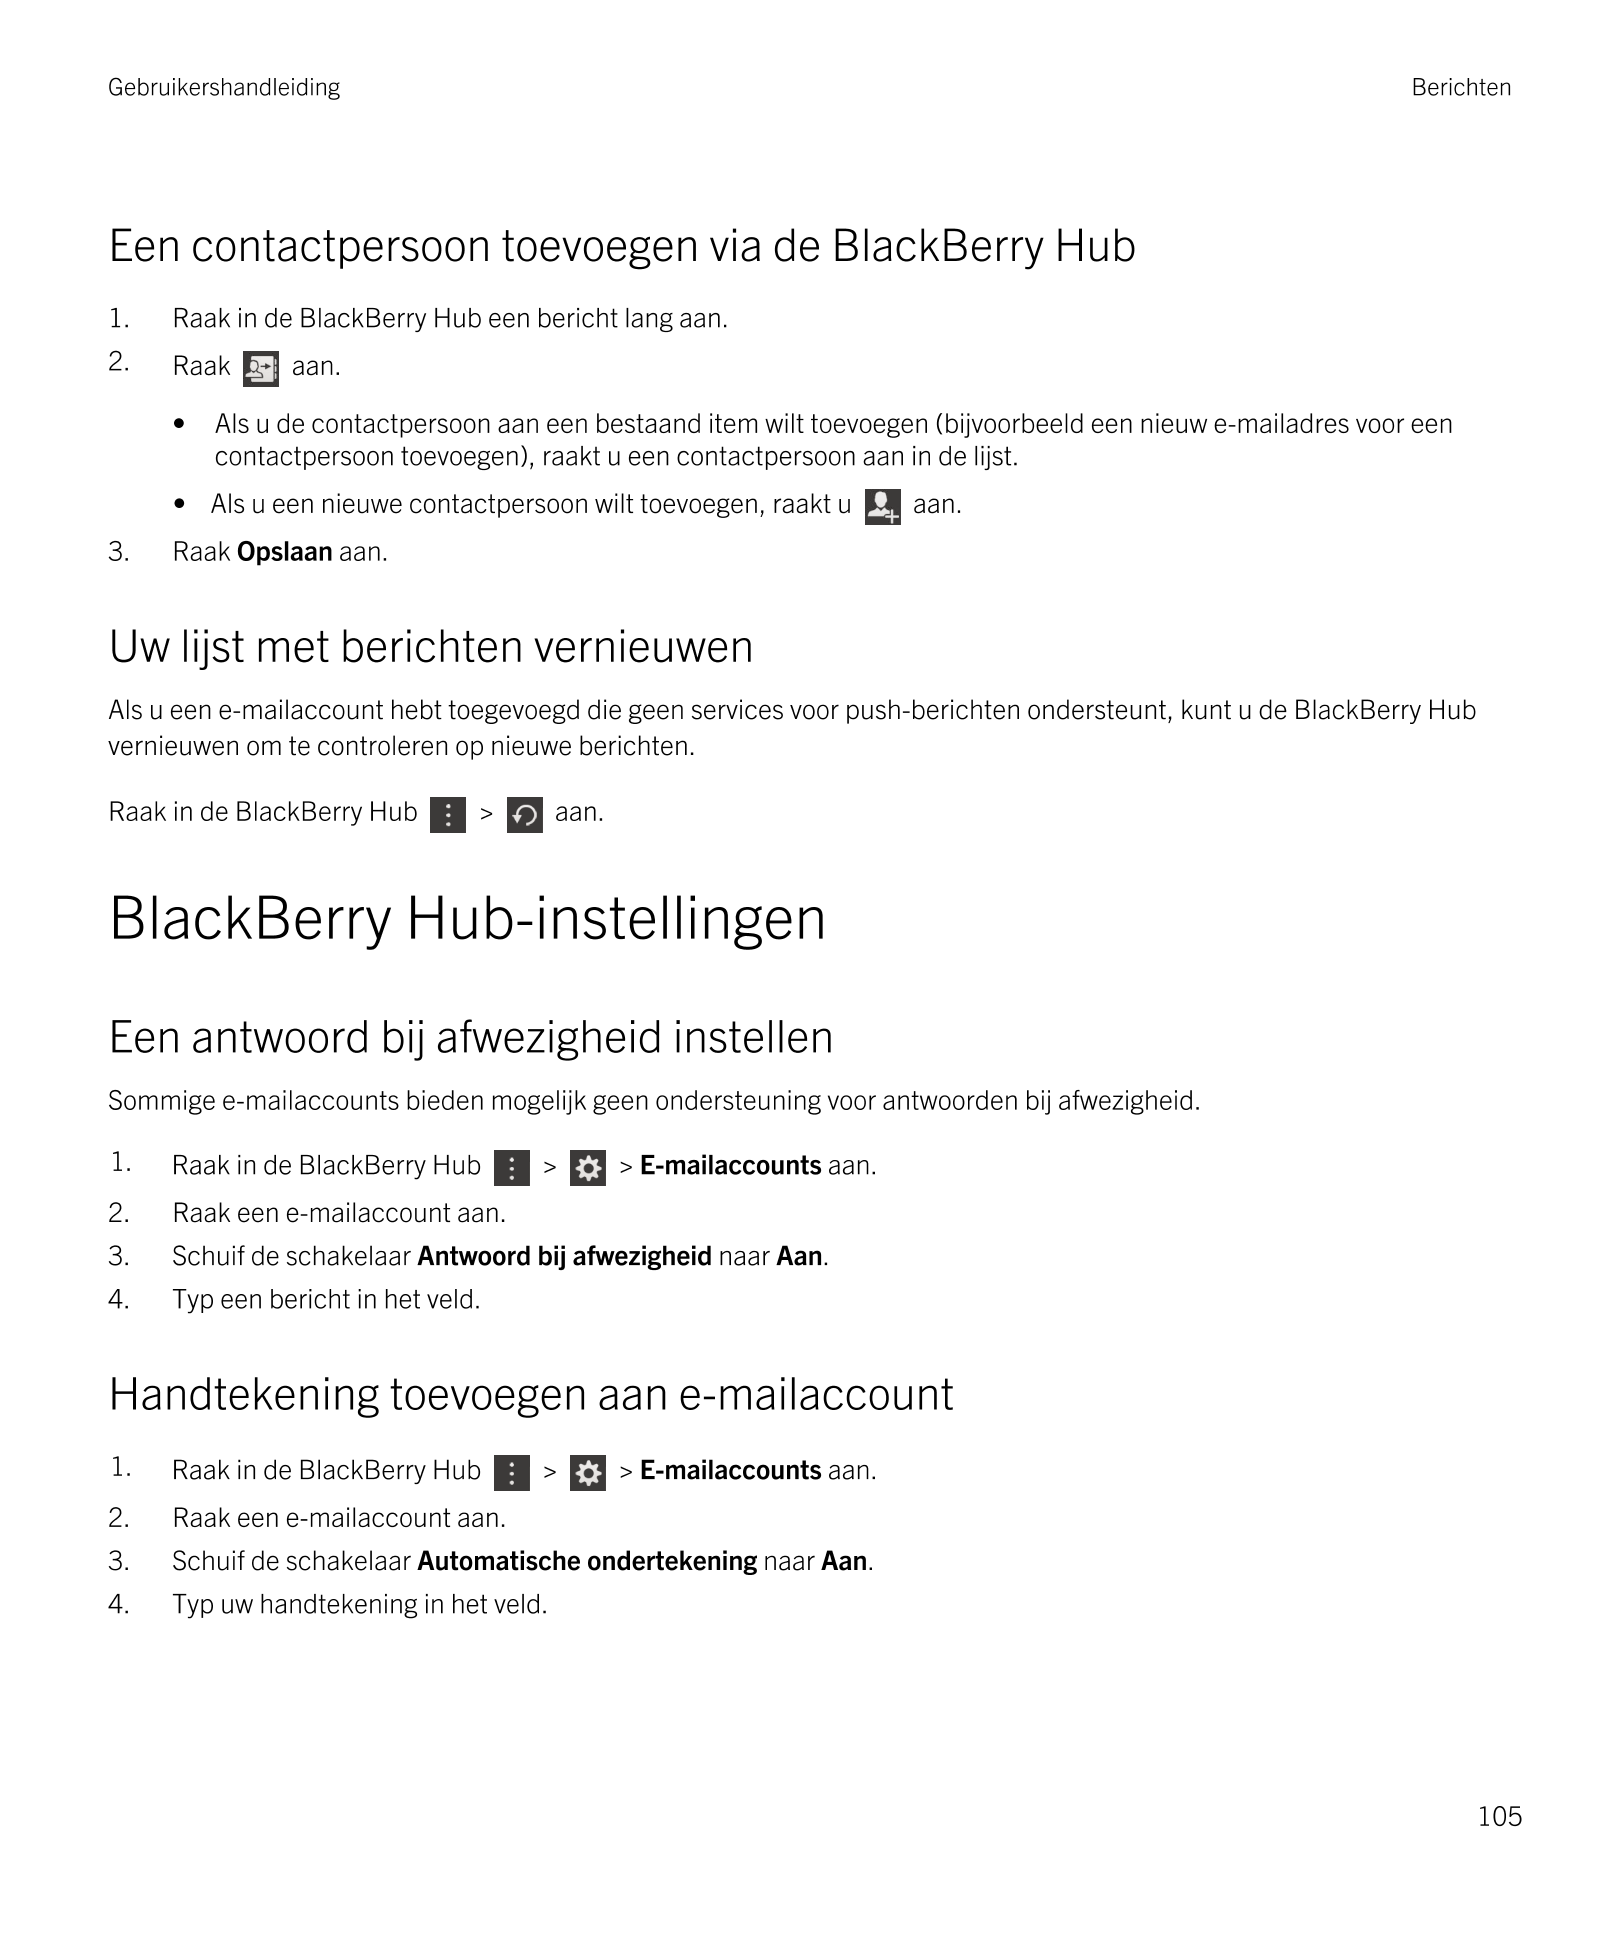 Gebruikershandleiding Berichten
Een contactpersoon toevoegen via de  BlackBerry Hub
1. Raak in de  BlackBerry Hub een bericht la